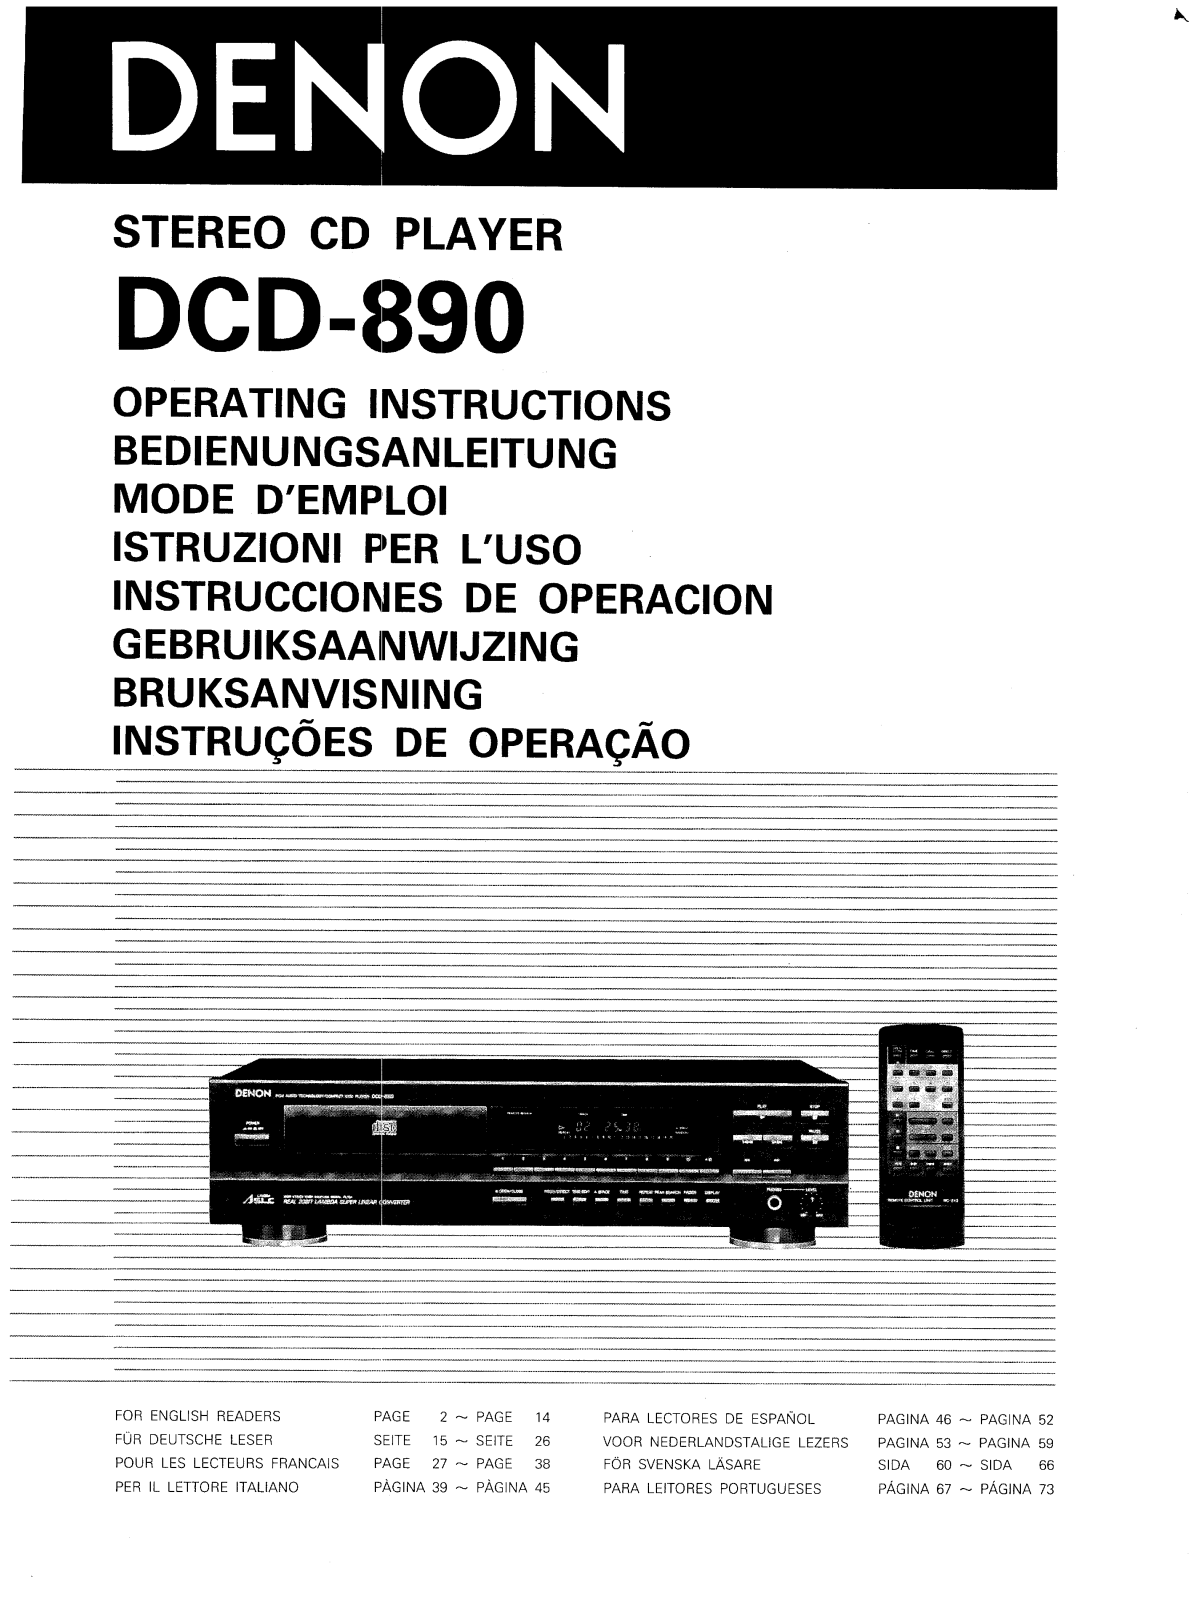 Denon DCD-890 Owner's Manual